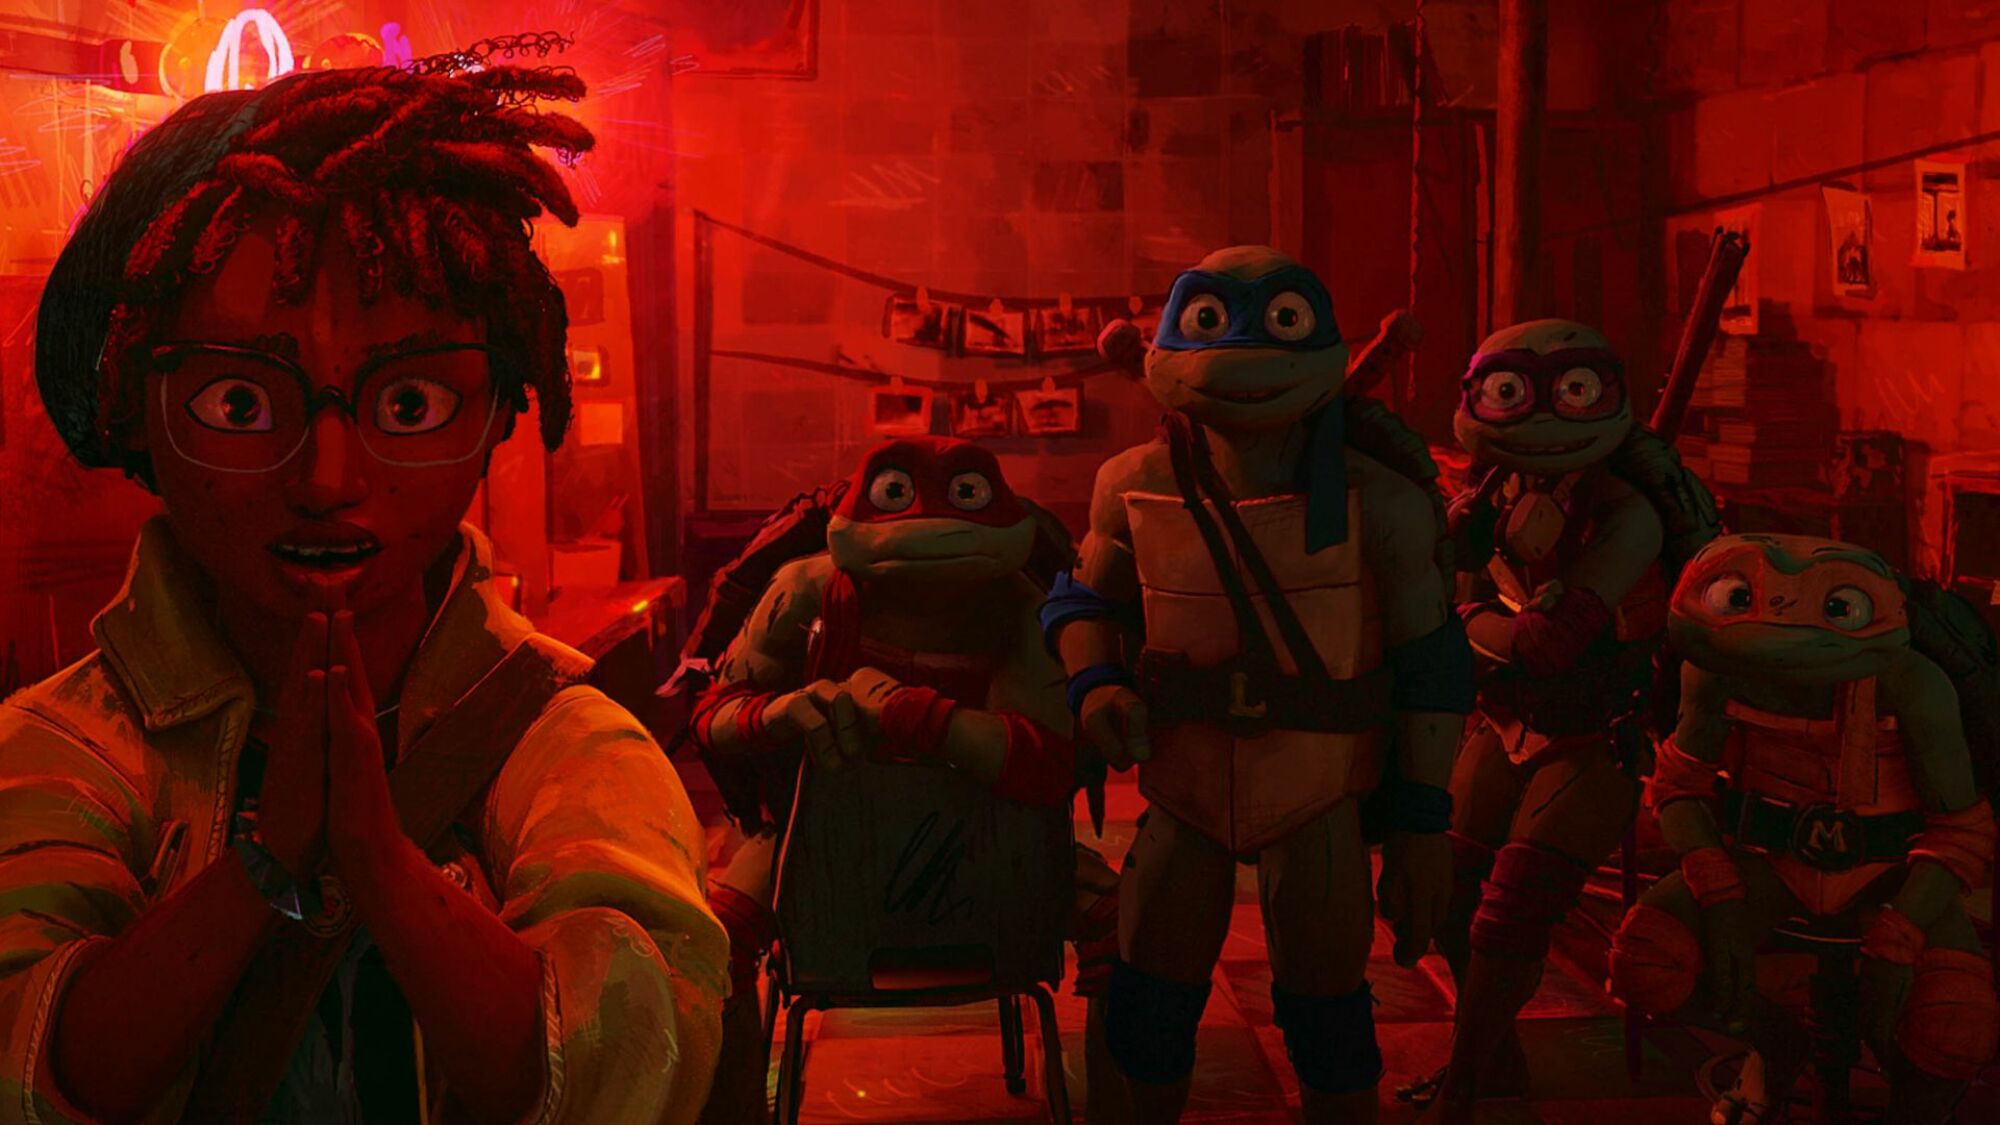 April O'Neil and the turtles in "Teenage Mutant Ninja Turtles: Mutant Mayhem."